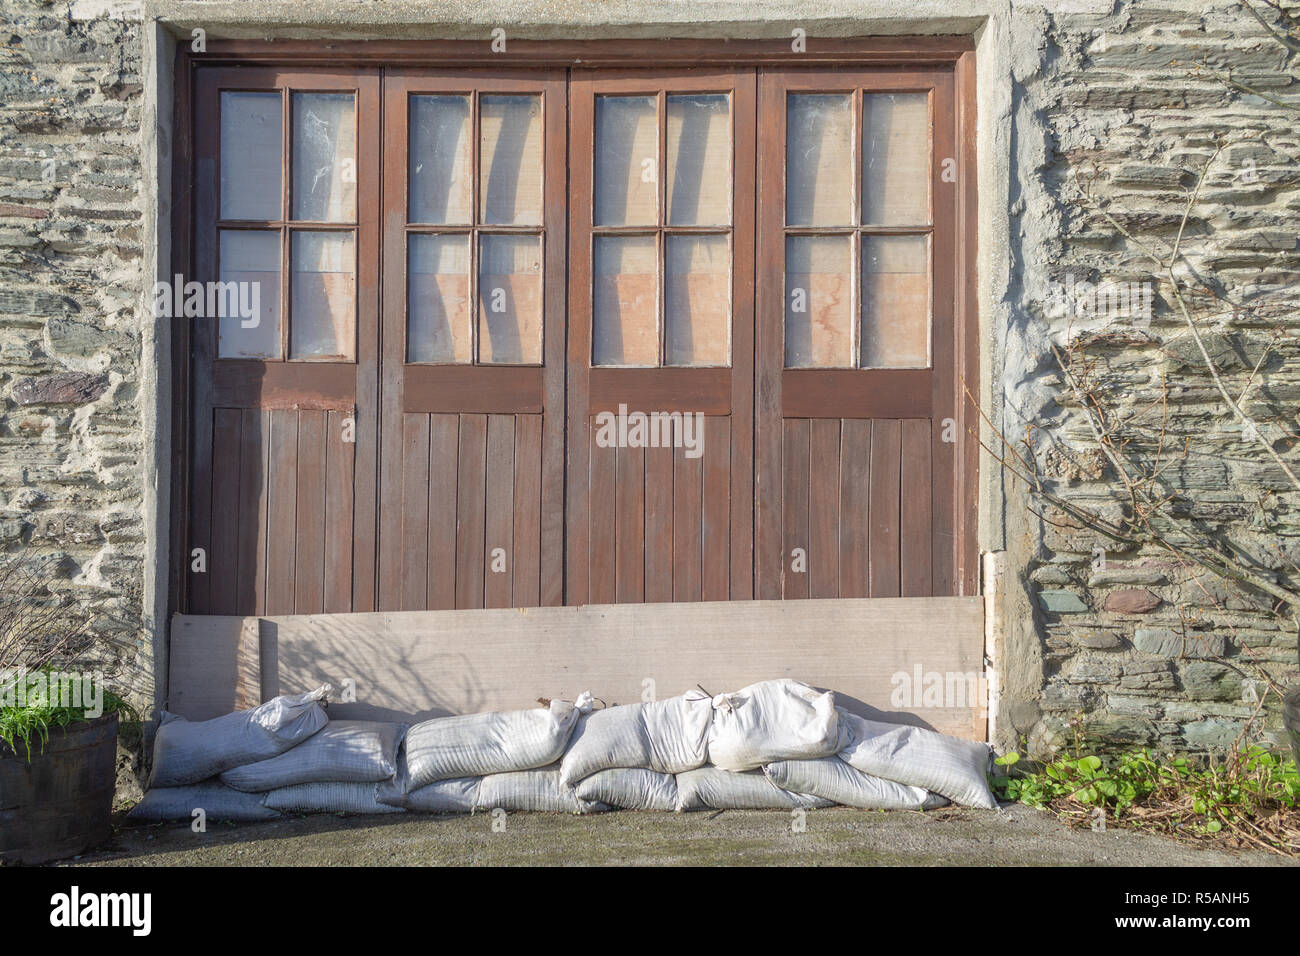 Sacchi di sabbia e di tavole di legno inchiodati in un portale come le misure di difesa contro le inondazioni o flood barrier Foto Stock